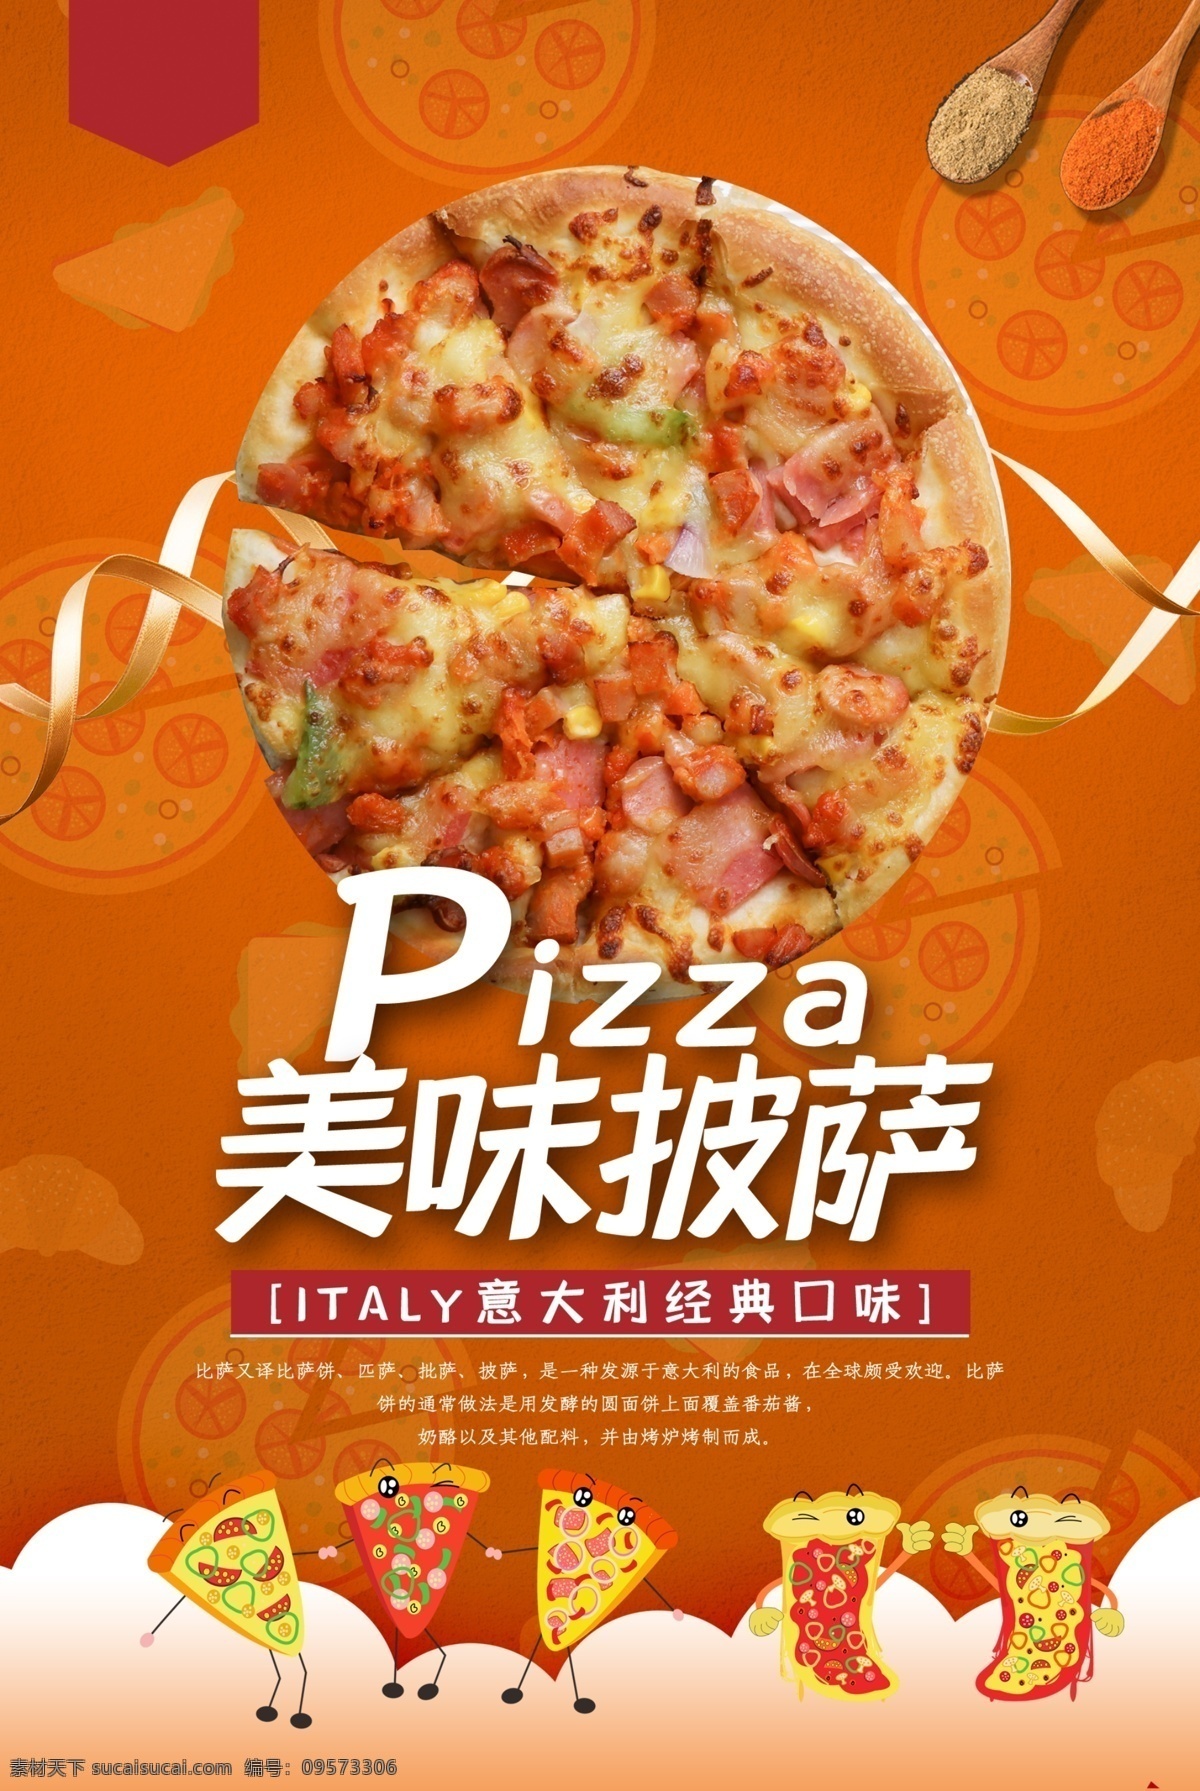 美味披萨 披萨 比萨 欧洲披萨 意大利披萨 pizza 美味 中国披萨 披萨做法 小吃 披萨海报 披萨展板 披萨文化 披萨促销 披萨西餐 披萨快餐 披萨加盟 披萨店 披萨必胜店 比萨披萨 披萨包装 披萨美食 西式披萨 披萨厨师